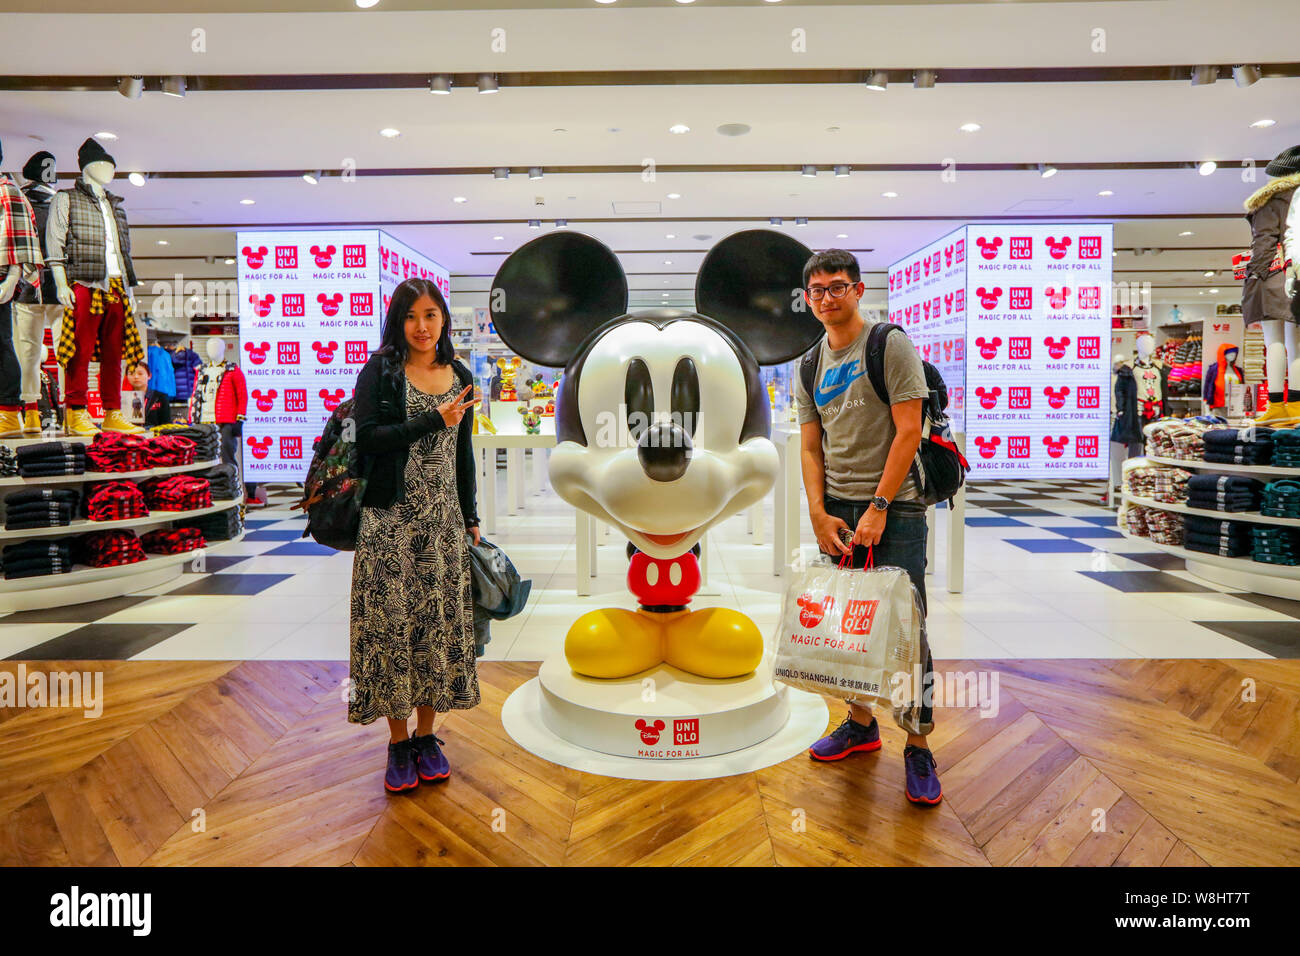 Les clients posent avec une statue de Mickey Mouse Disney l'Uniqlo au concept store d'inspiration à Shanghai, Chine, le 29 septembre 2015. Uniqlo, le populaire J Banque D'Images